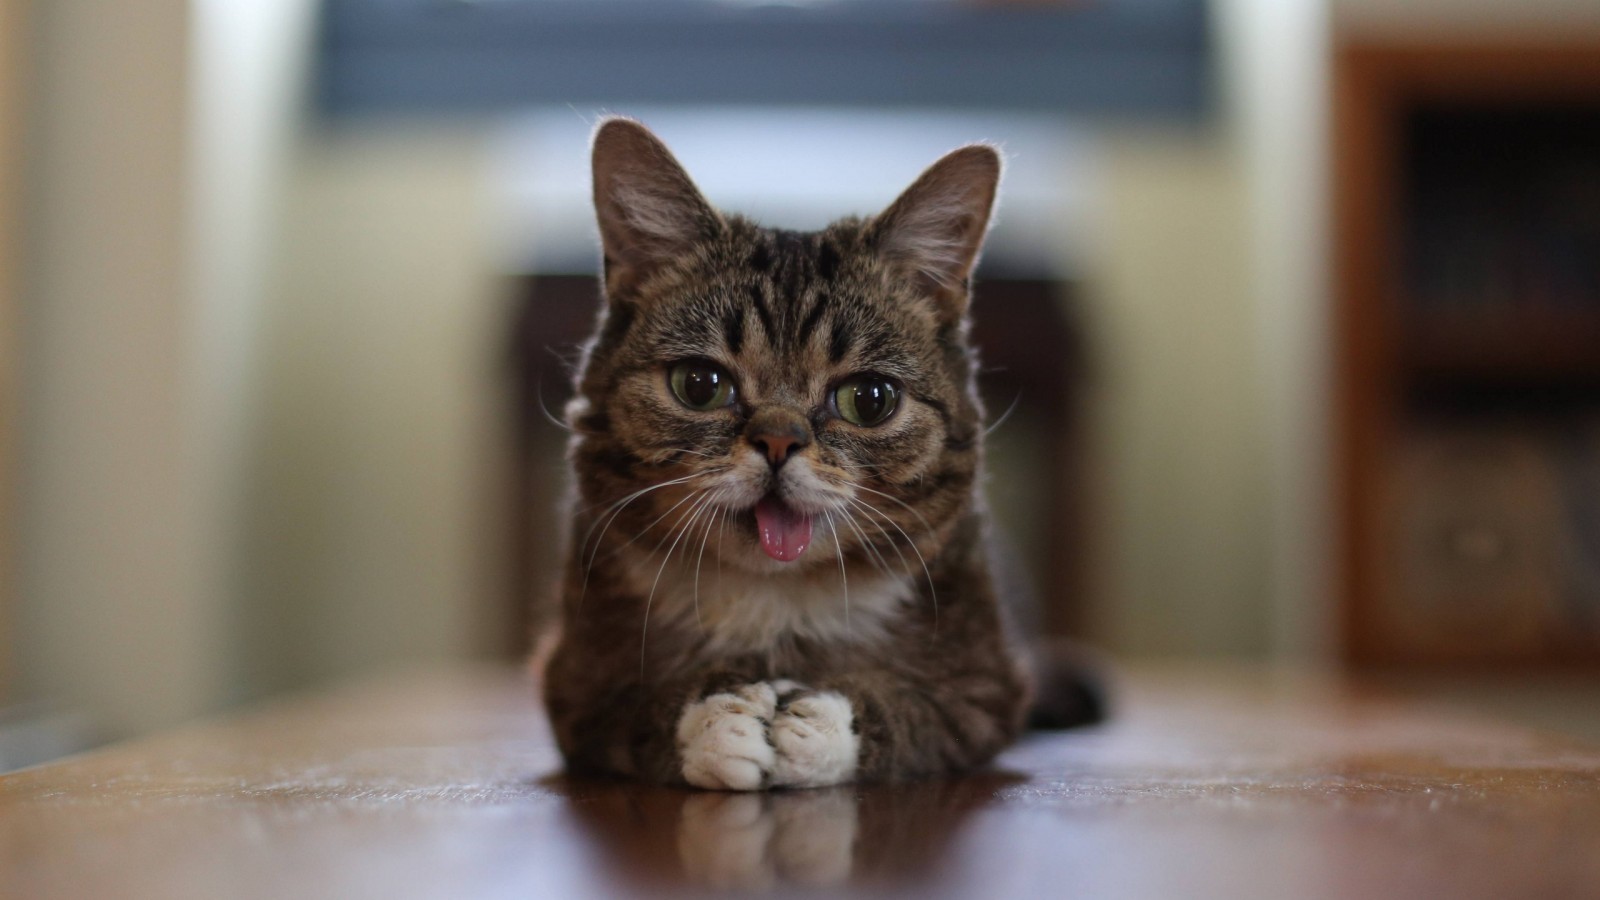 Cat Lil Bub Aka Perma Kitten Widescreen And Full HD Wallpaper